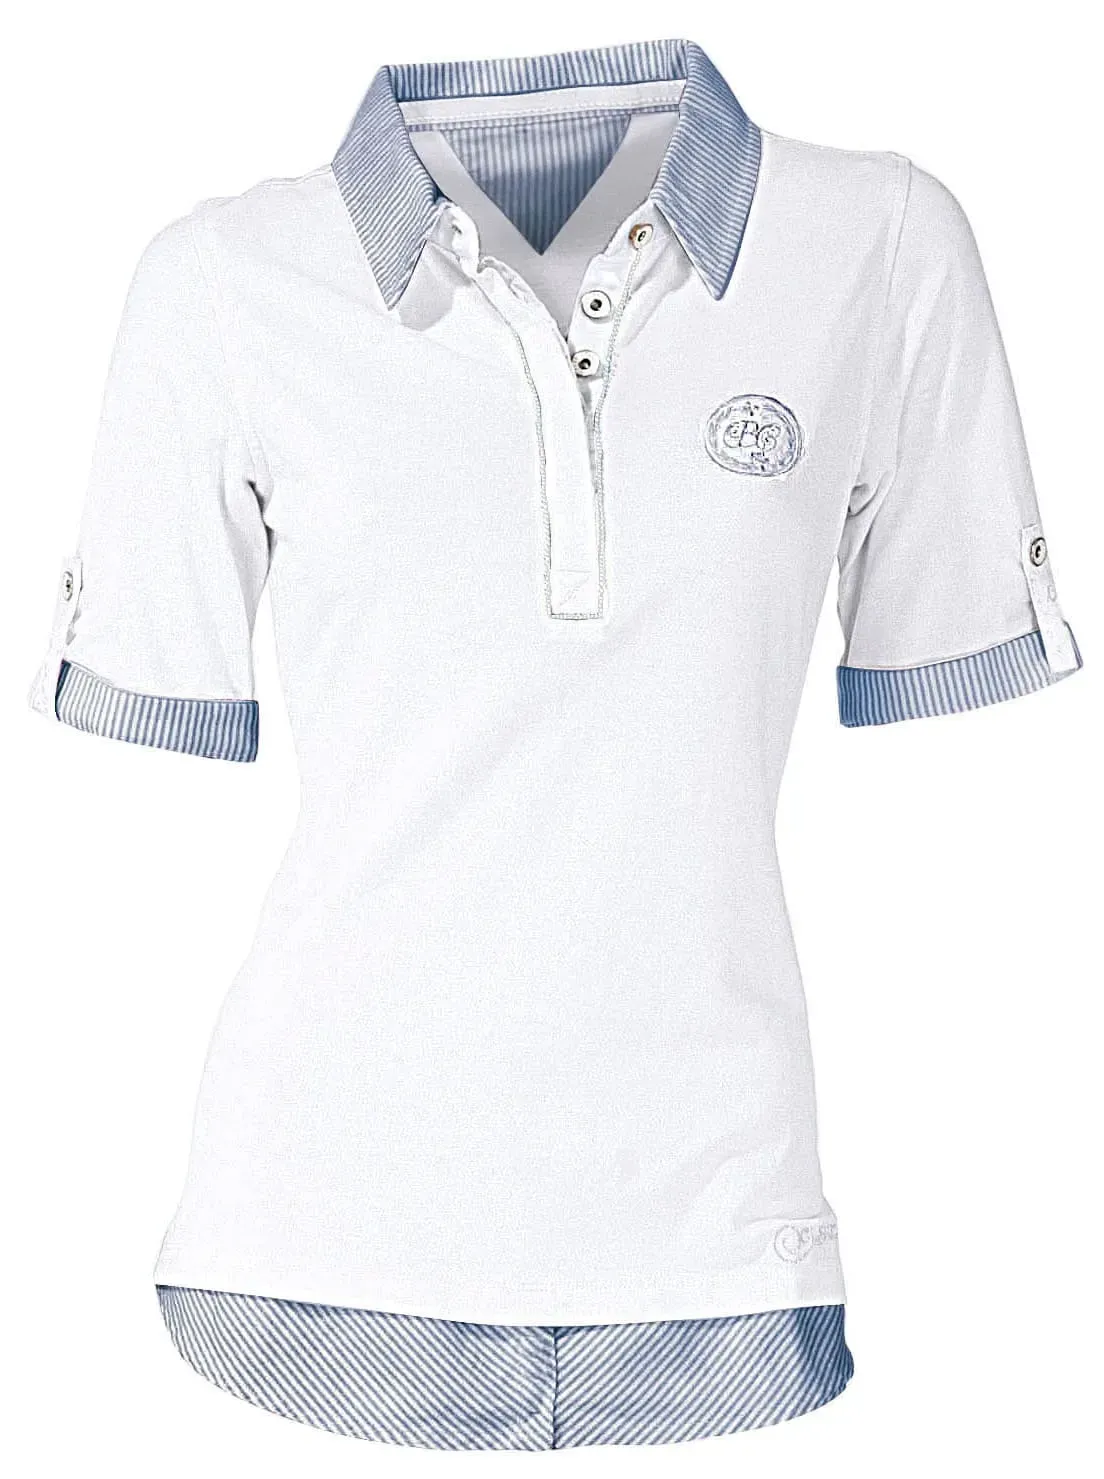 Poloshirt INSPIRATIONEN "Poloshirt" Gr. 46, weiß Damen Shirts Jersey